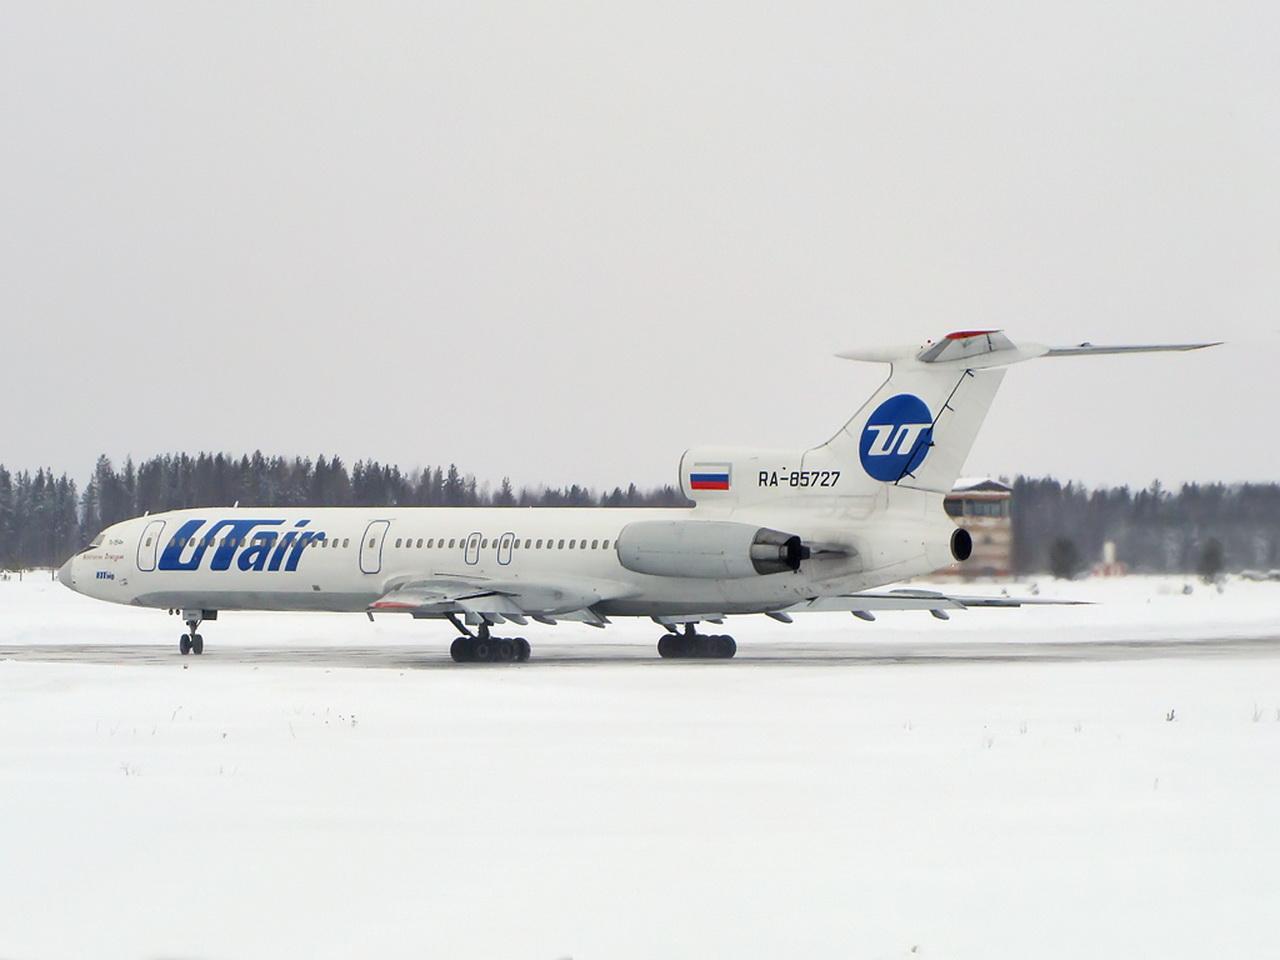 обои Белый самолет и белый снег фото